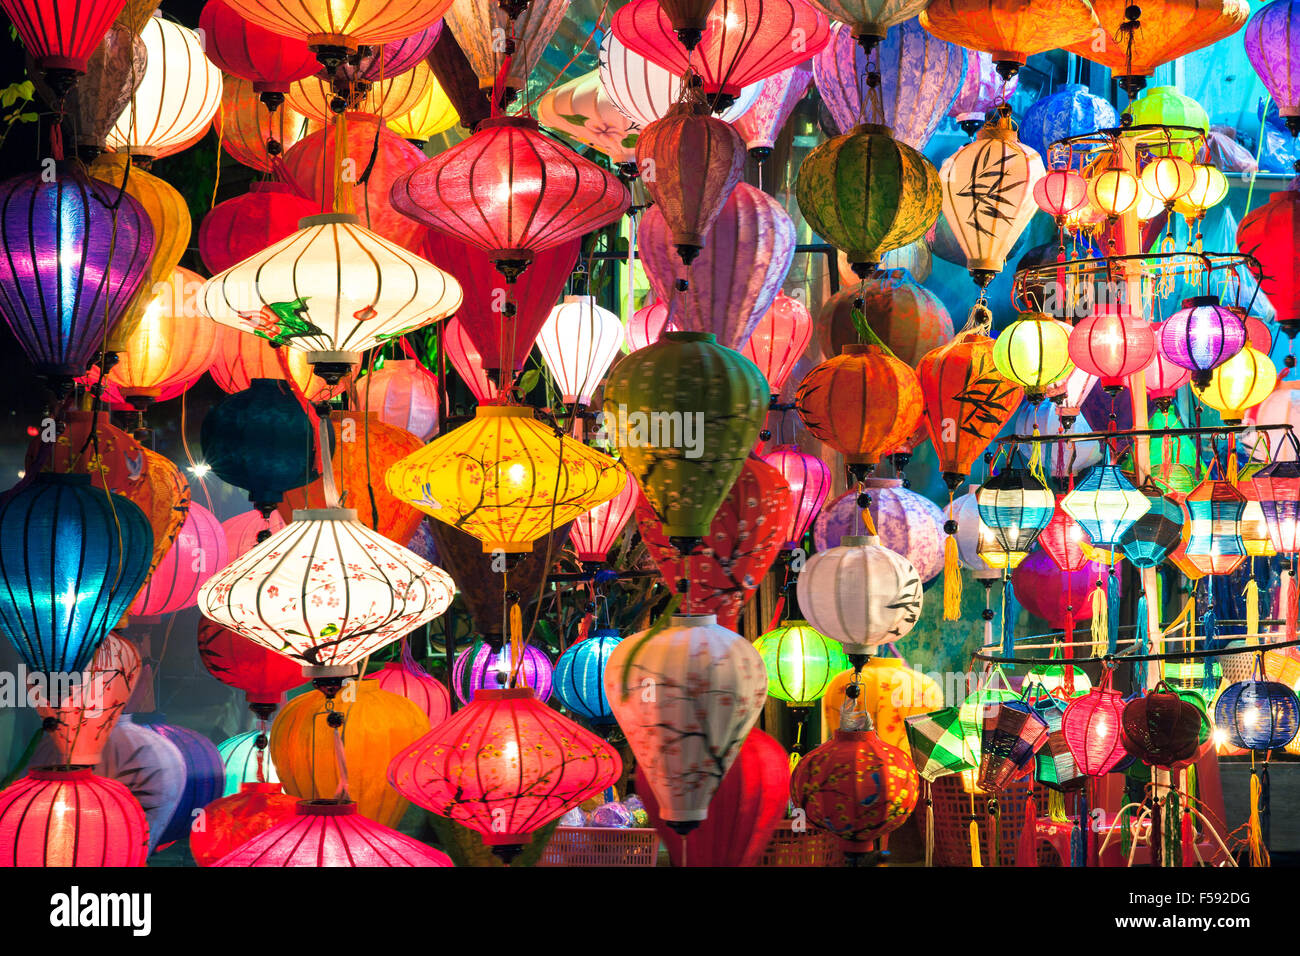 Lanternes traditionnelles shop la nuit, Hoi An, ville ancienne, UNESCO World Heritage Site, Vietnam. Banque D'Images